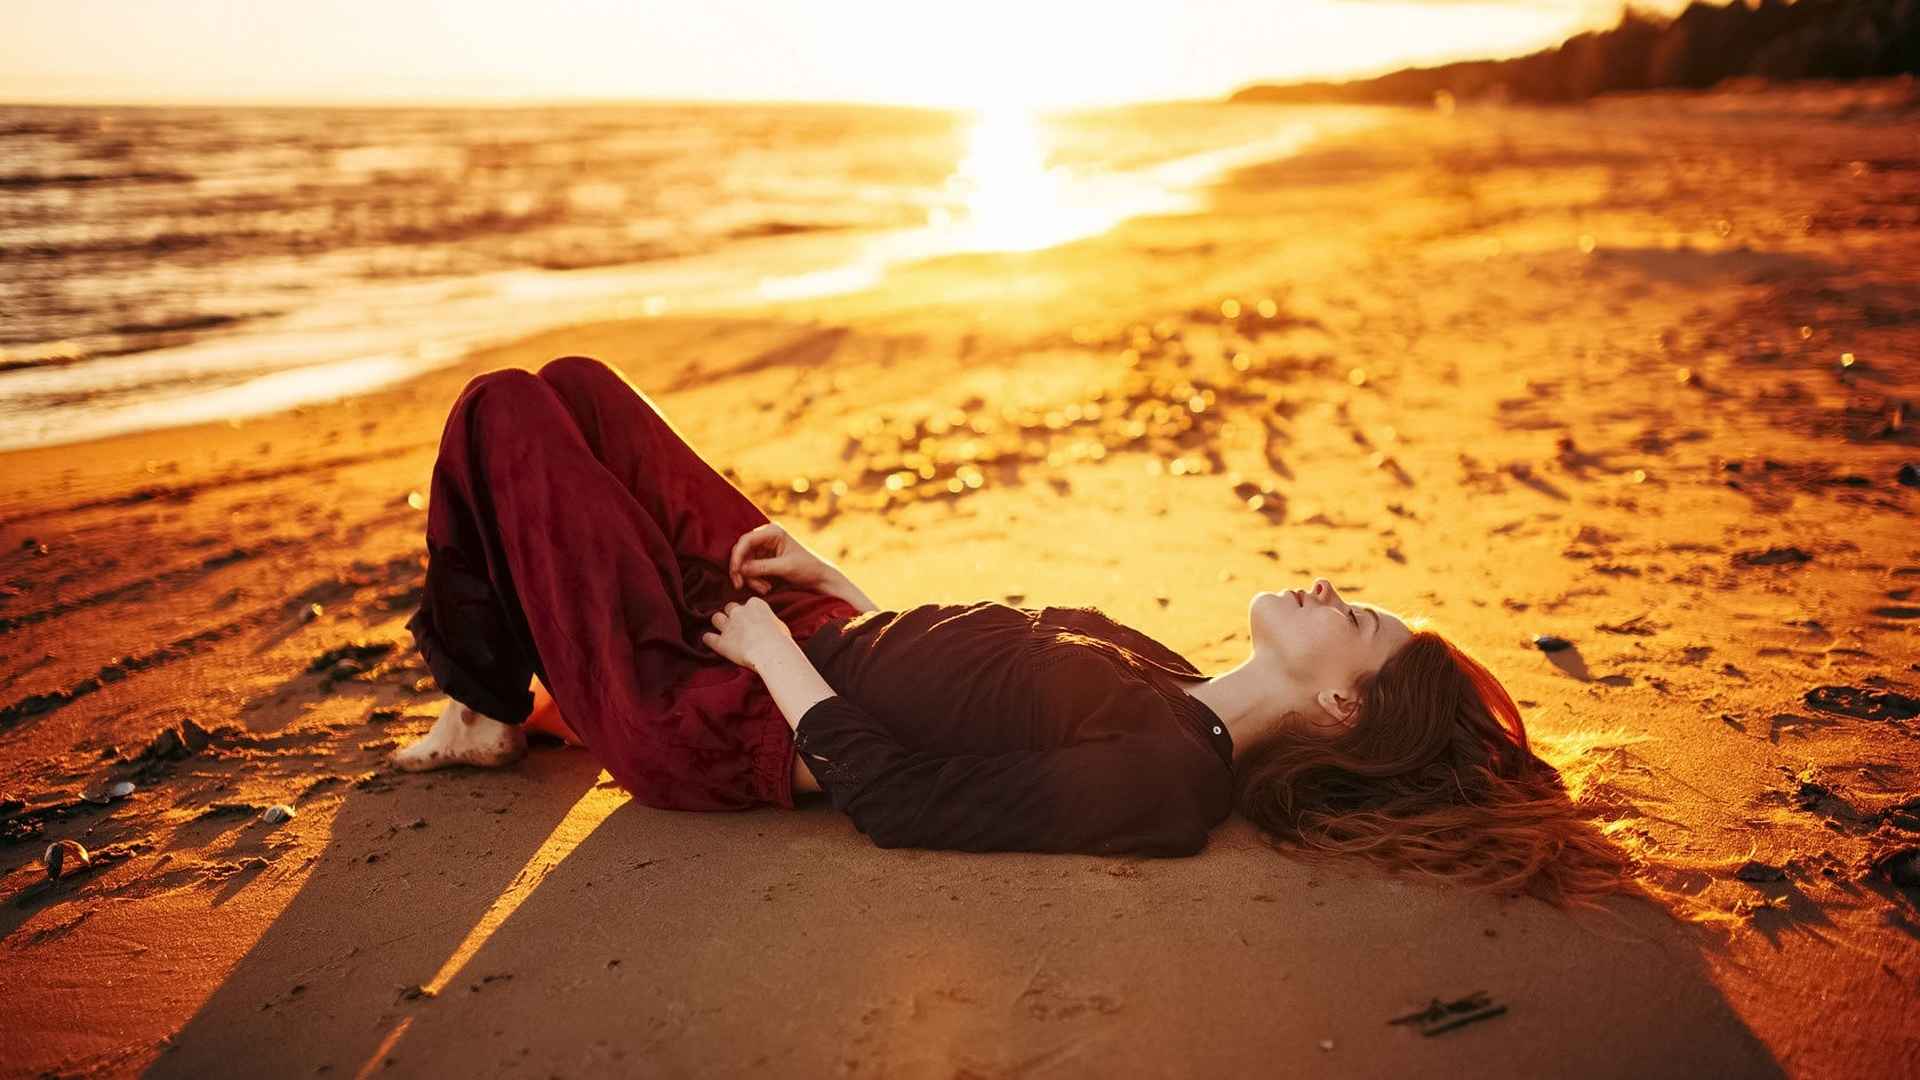 躺着沙滩上晒太阳的美女治愈系图片-